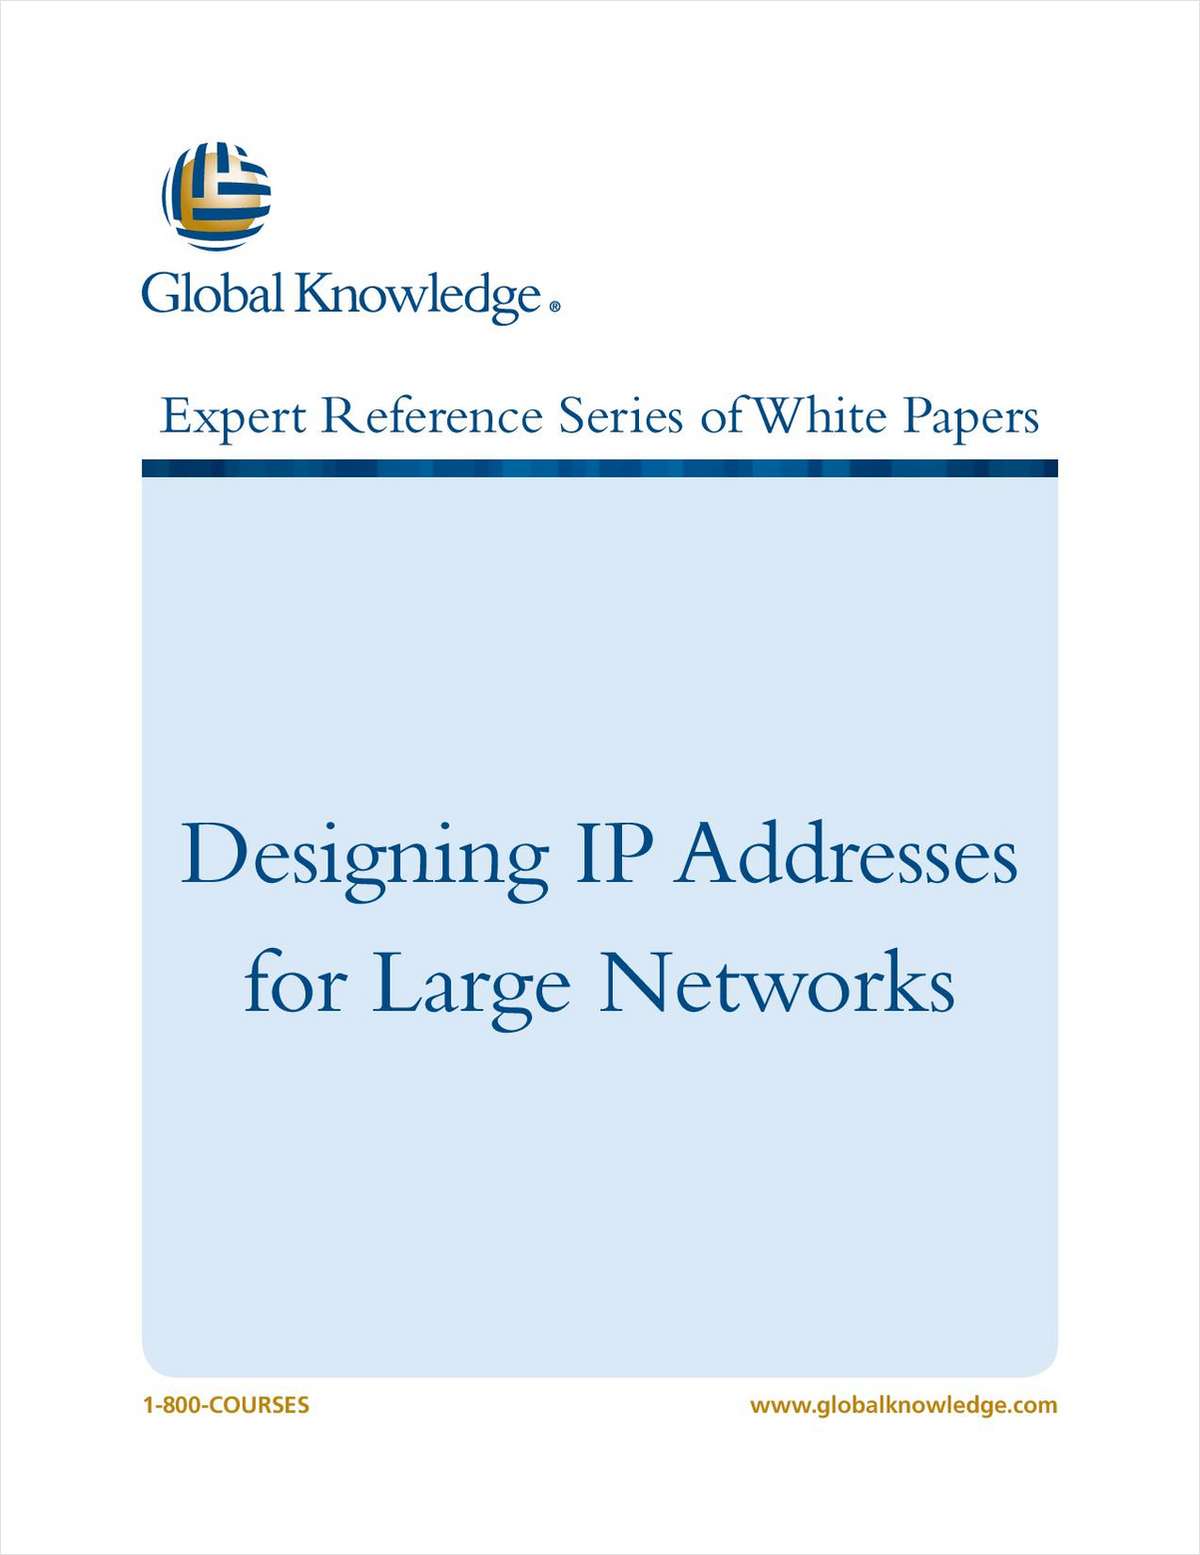 Designing IP Addresses for Large Networks